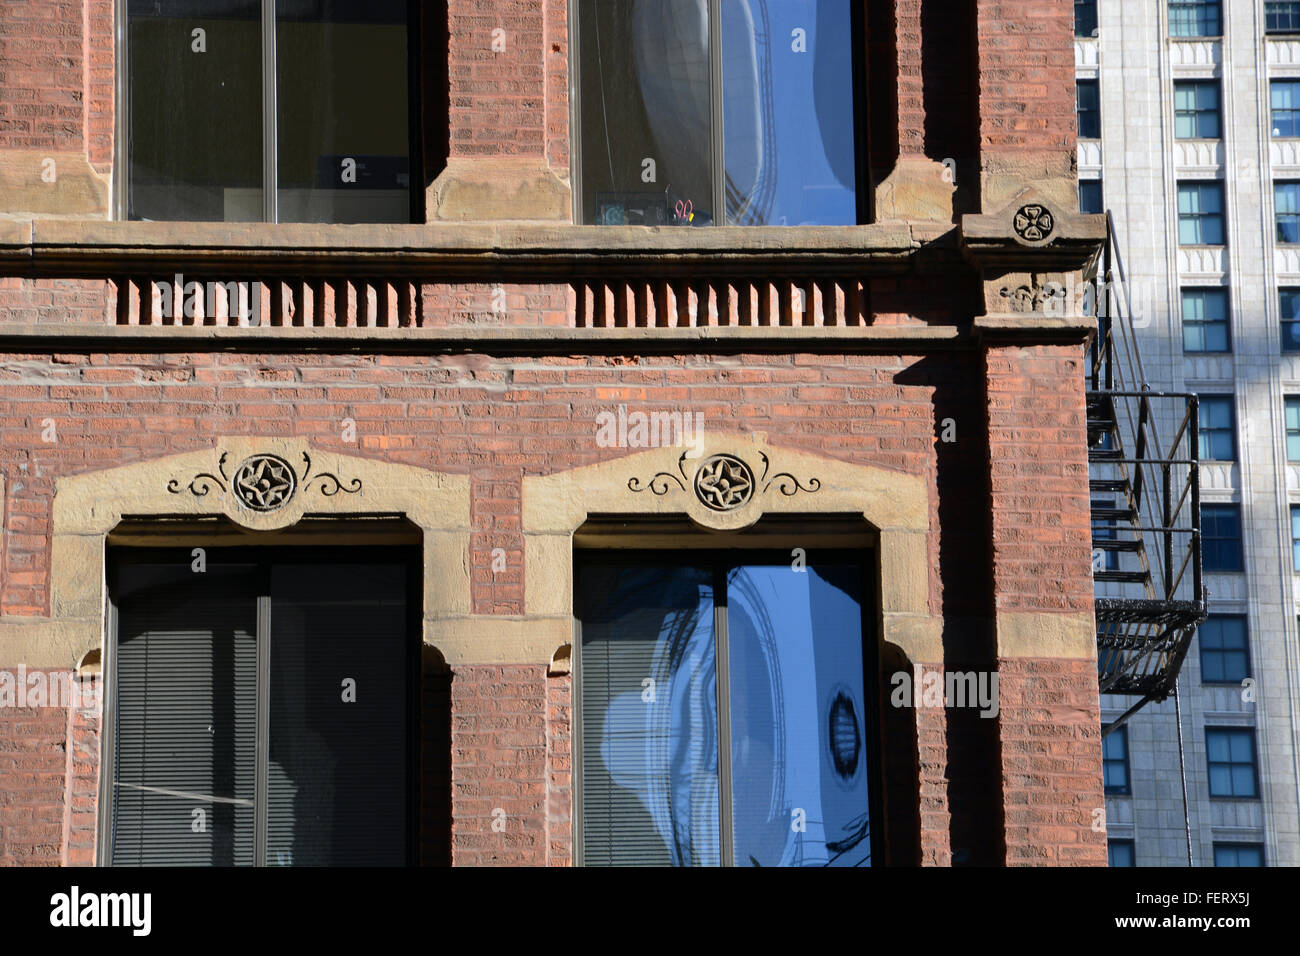 Châssis de fenêtre en pierre calcaire typique de l'architecture de Chicago du début du xxe siècle. Banque D'Images